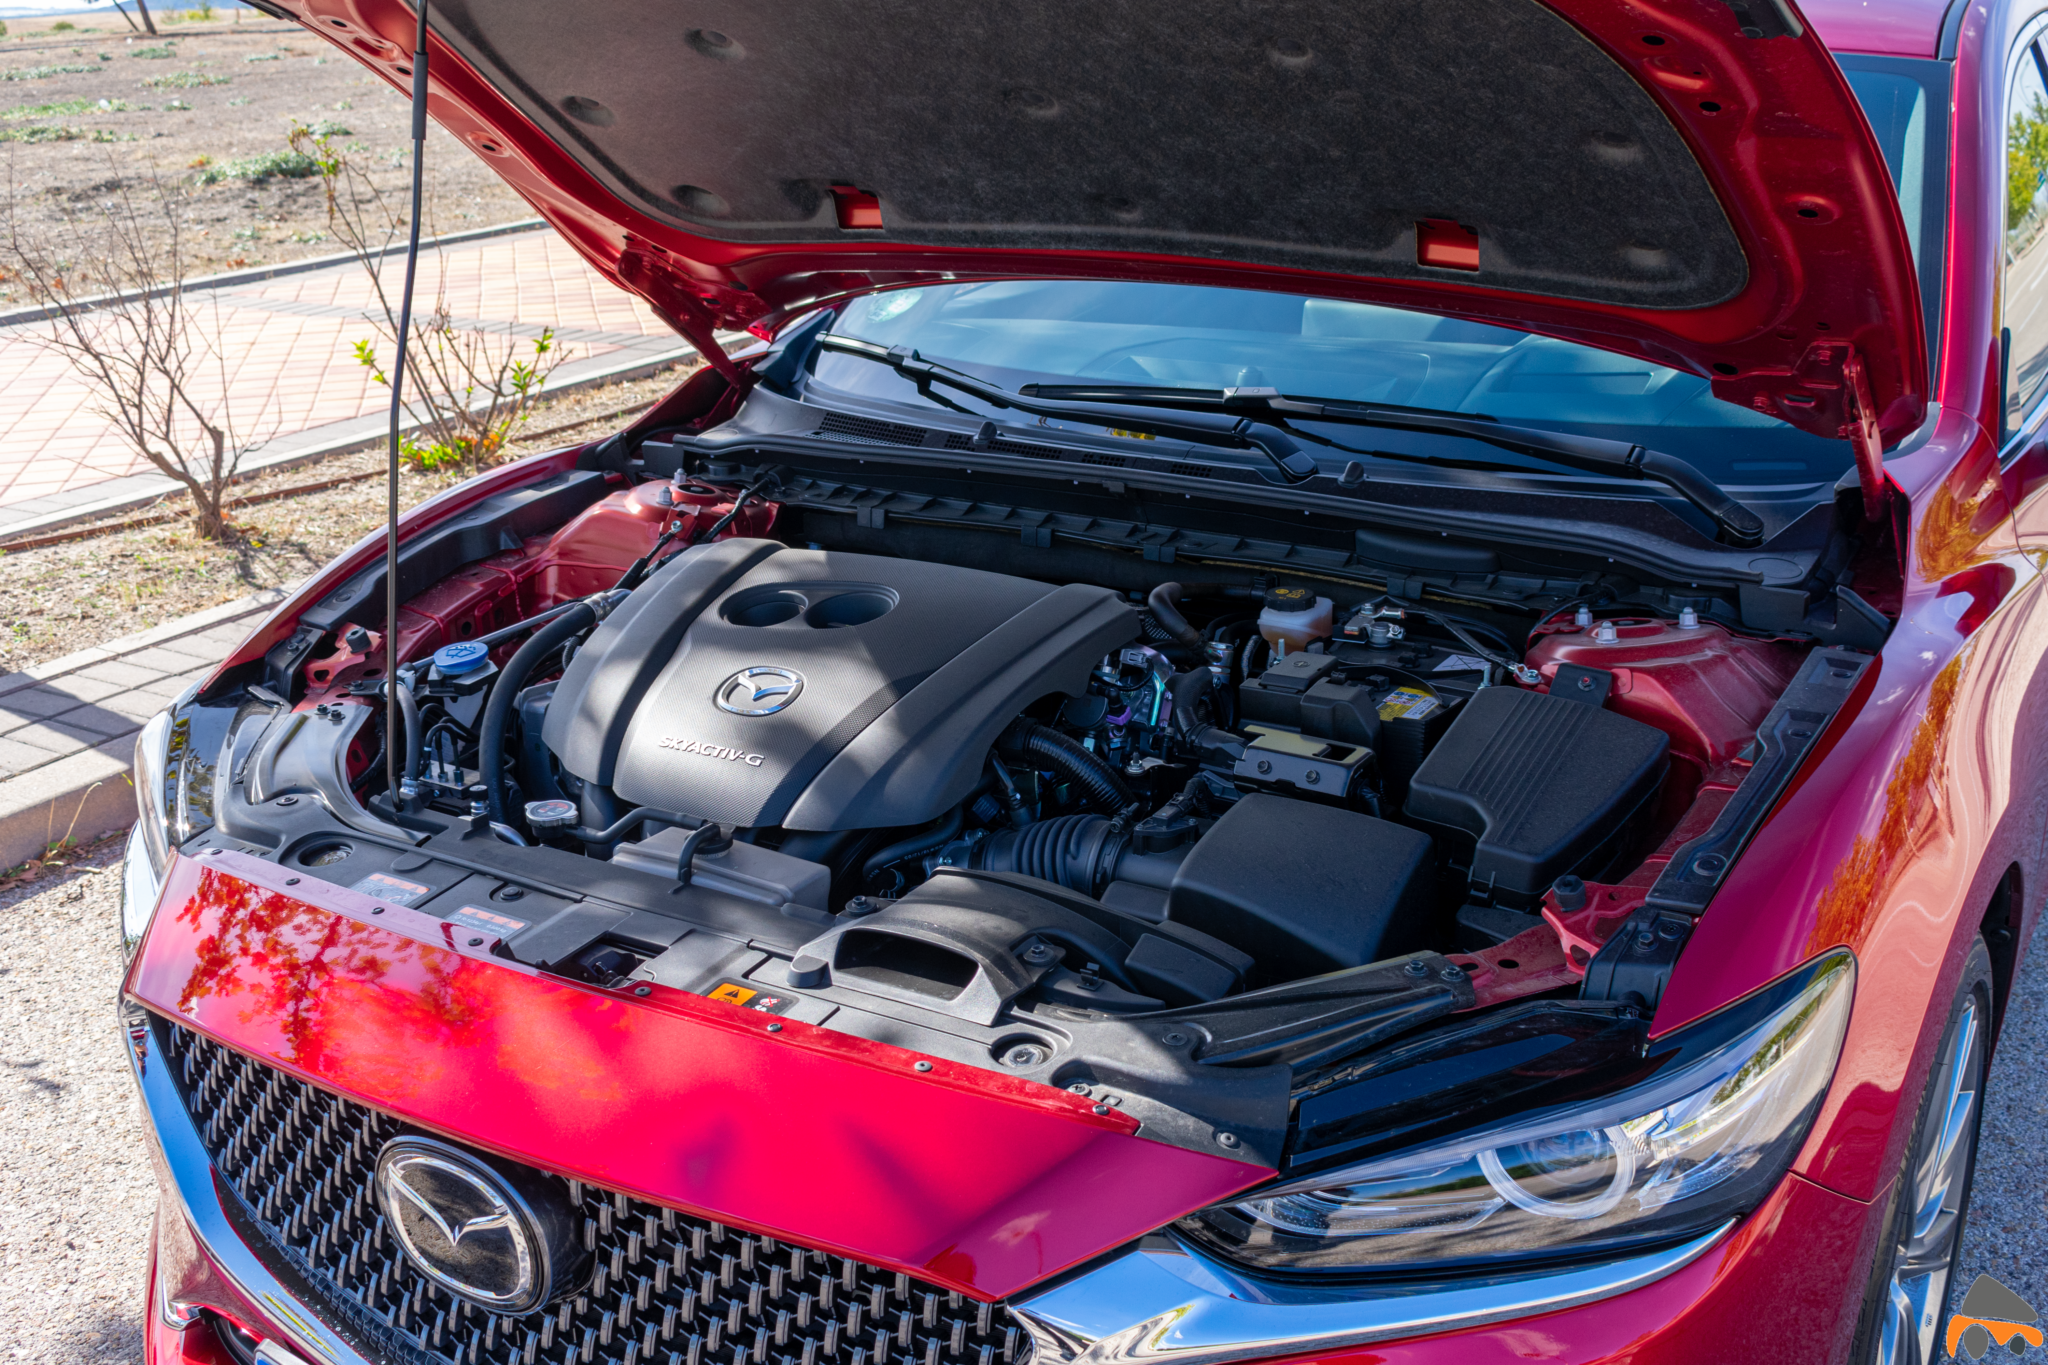 Motor Mazda6 - Mazda6 Signature gasolina: Una berlina con potencia y consumos ajustados